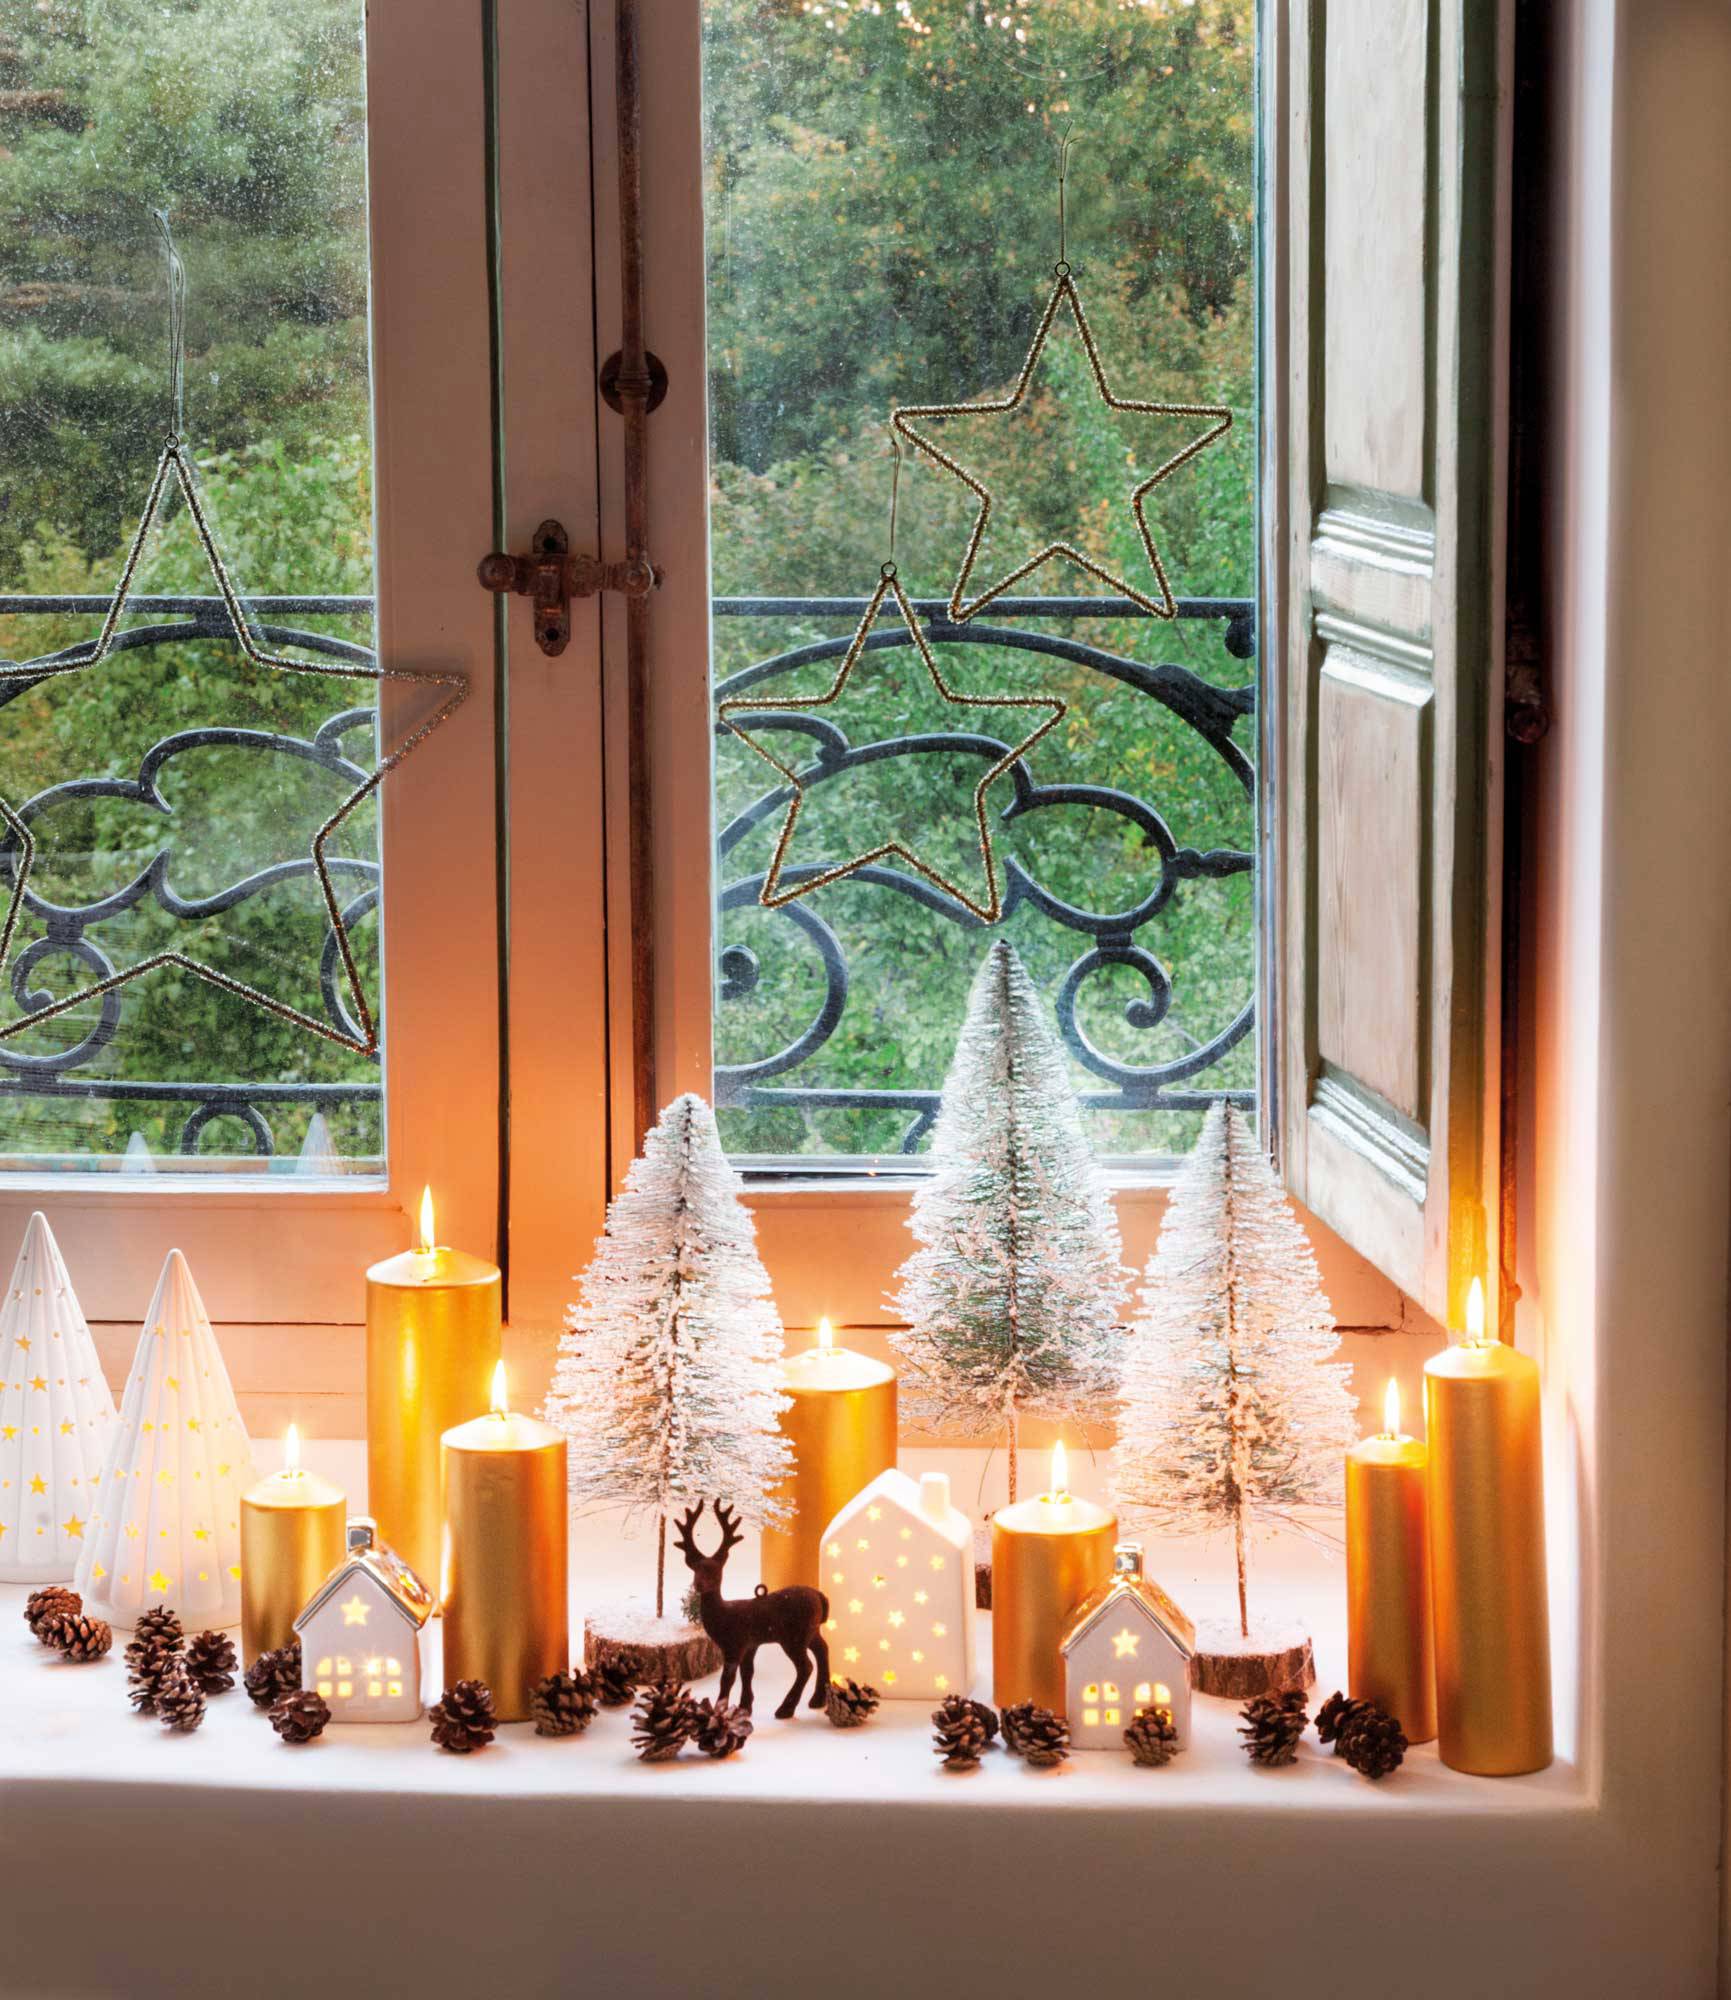 Ventana decorada con mini árboles de Navidad, figuras y velas